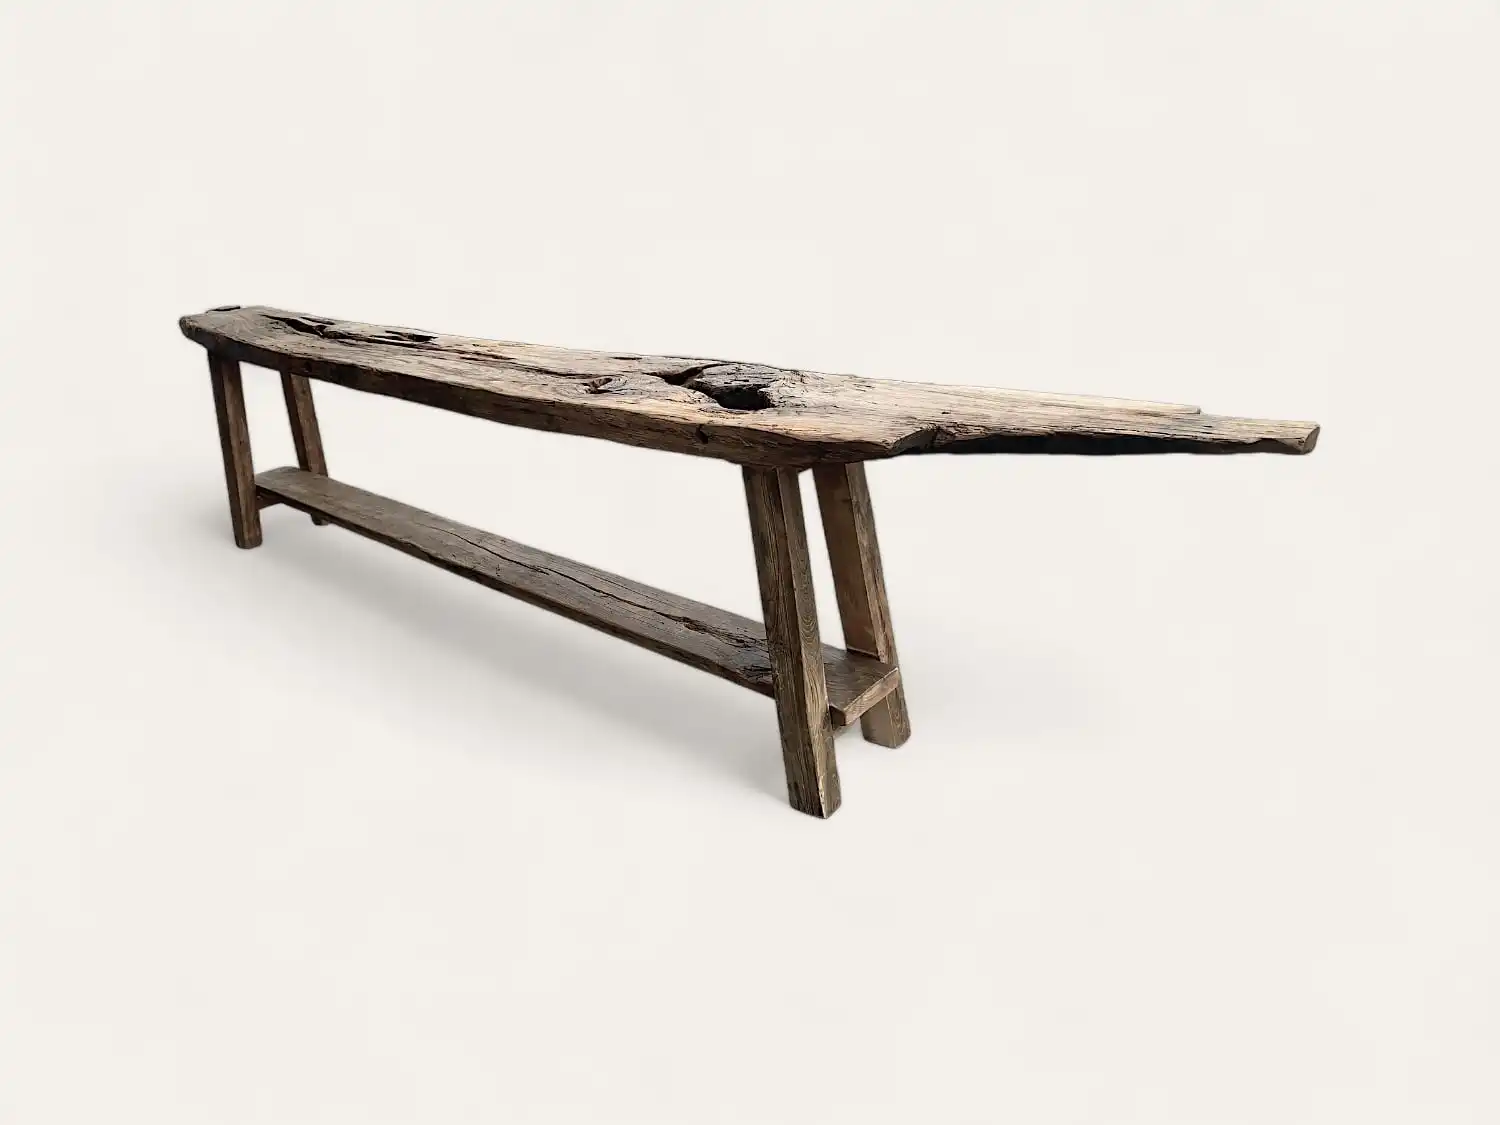 Un pied de table en bois ancien avec une base à trois pieds sur fond blanc.